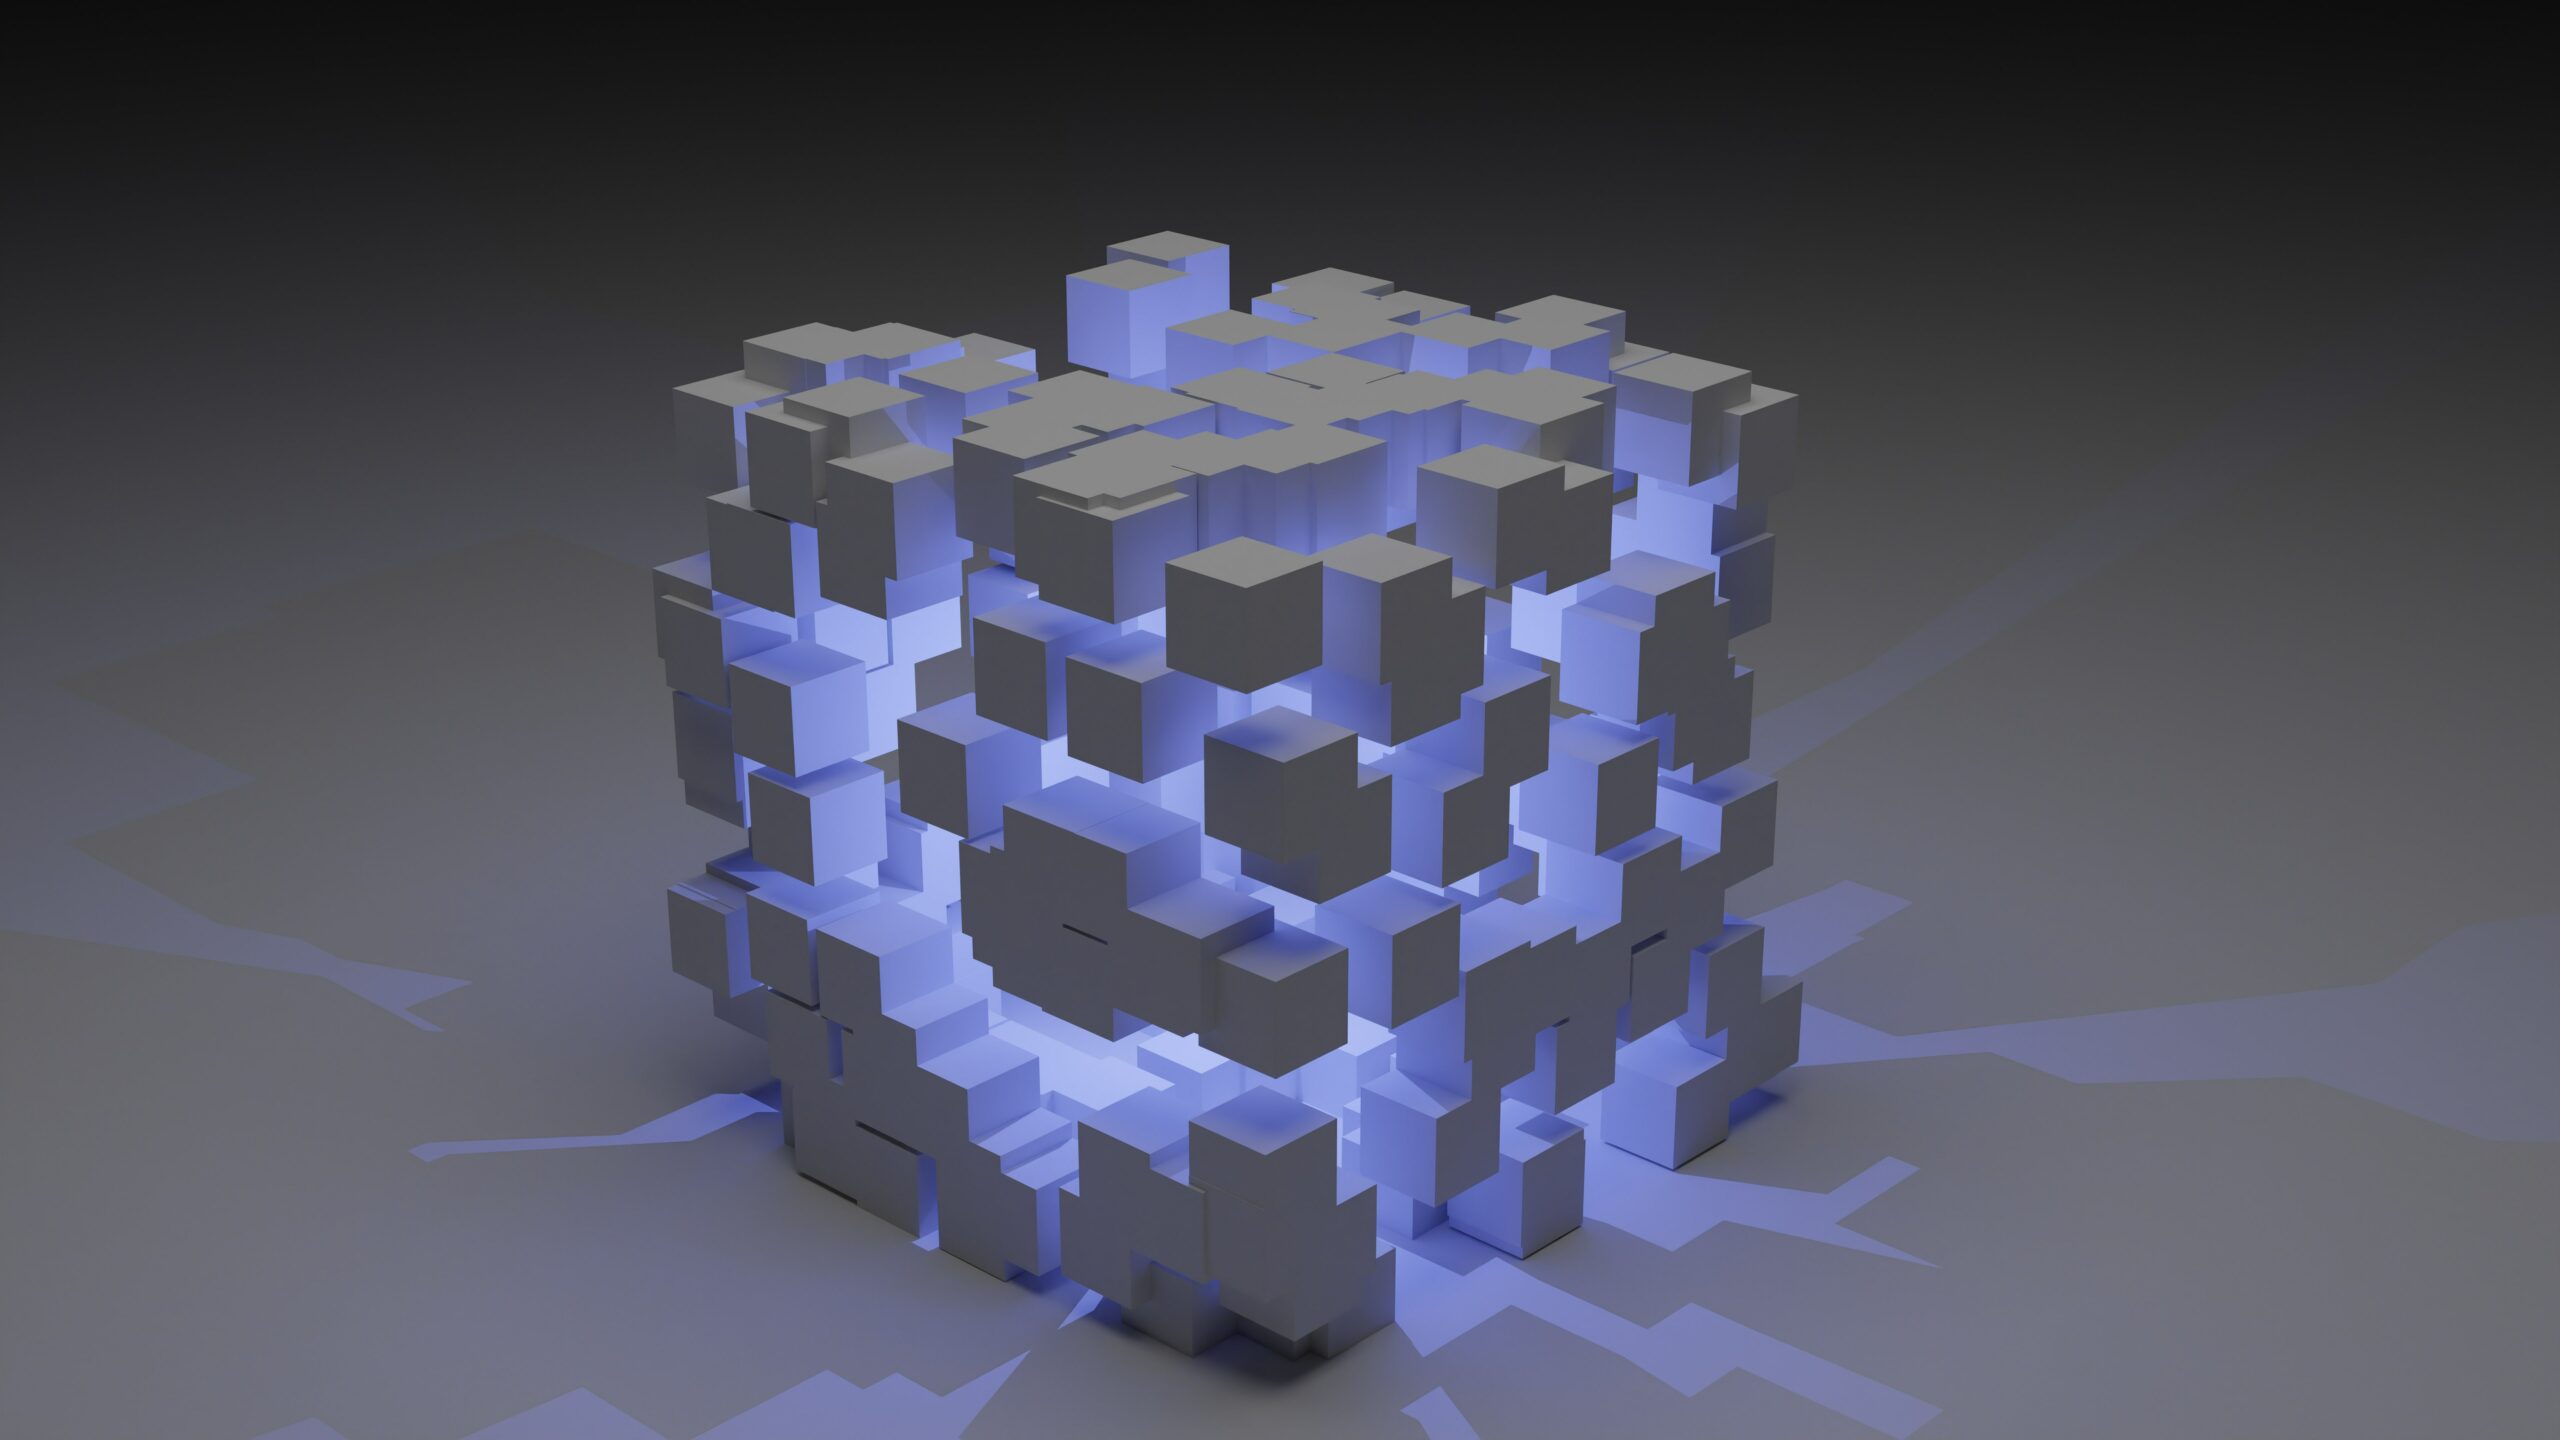 Cubo tridimensional futurista con luz interior